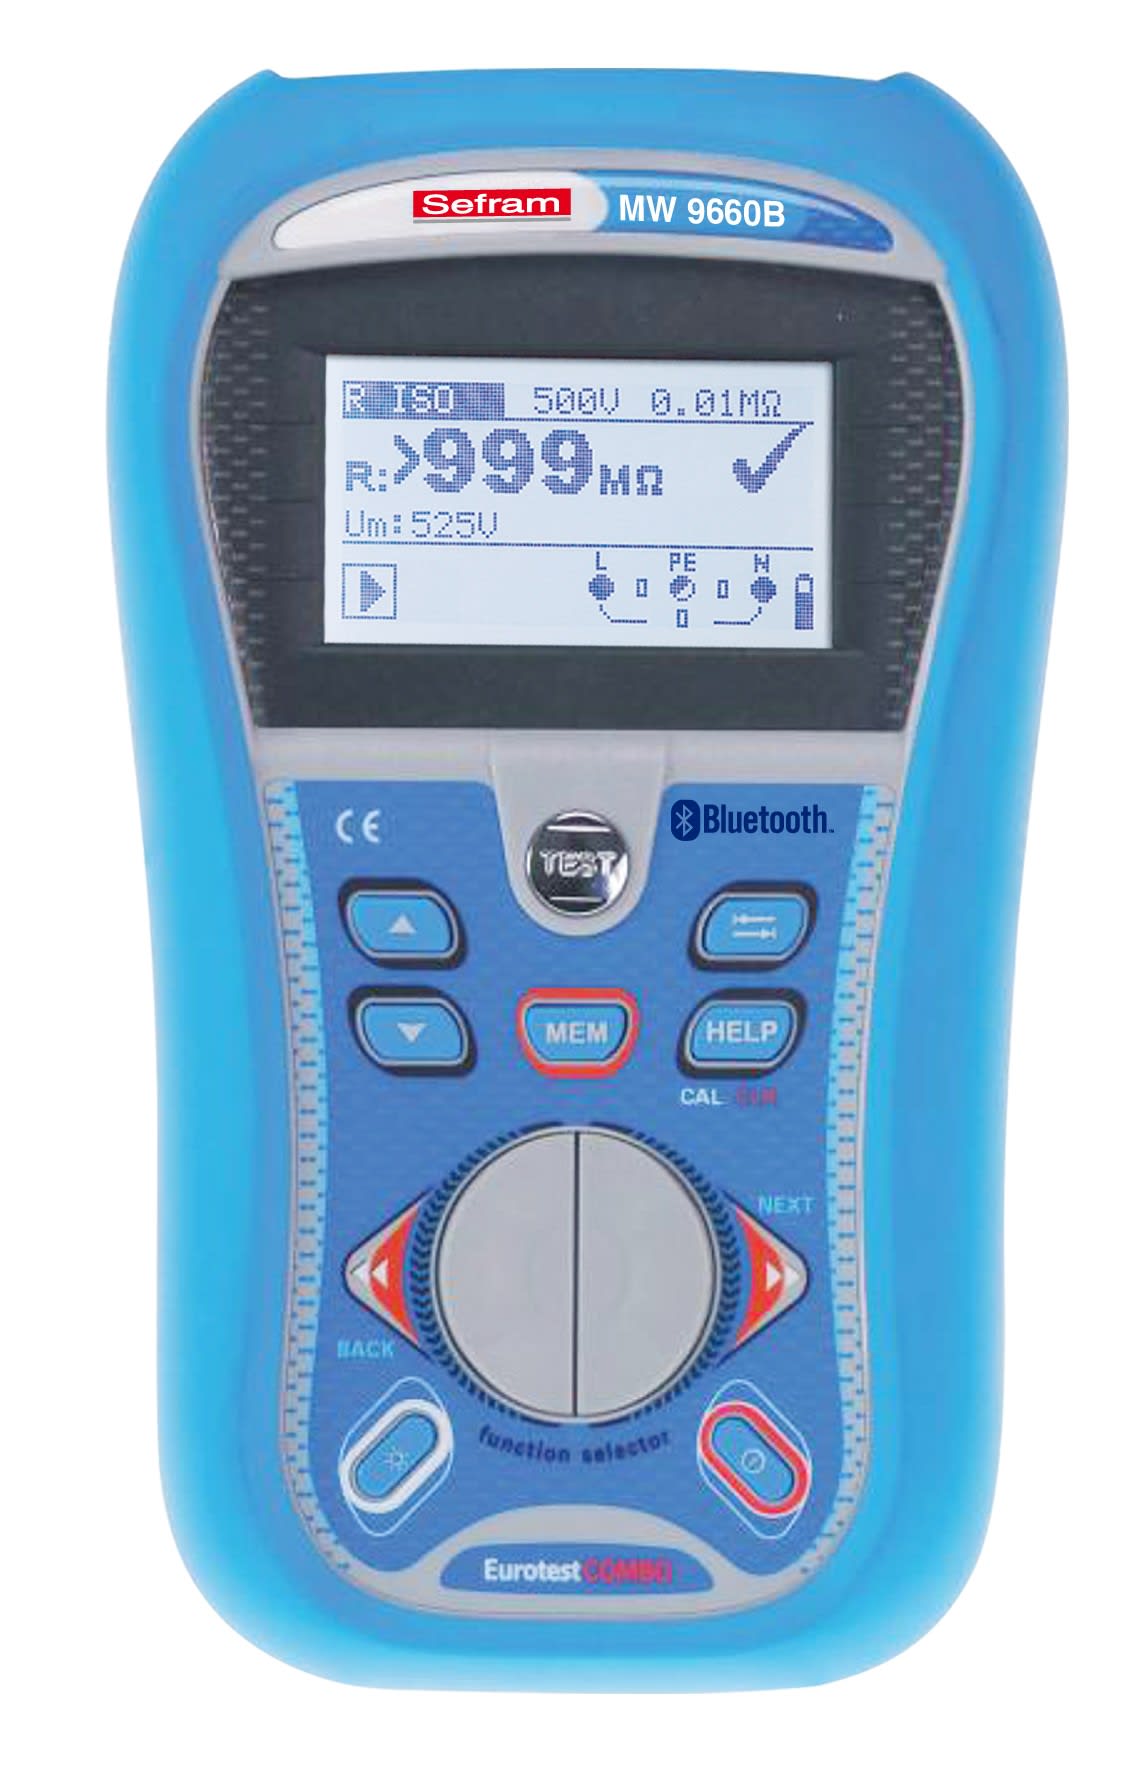 Sefram - Contrôleur électrique multifonctions.Testeur d'installation électrique.Bluetooth